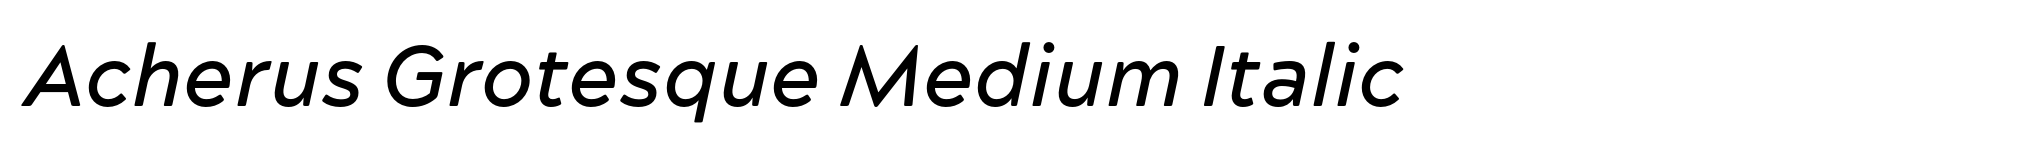 Acherus Grotesque Medium Italic image